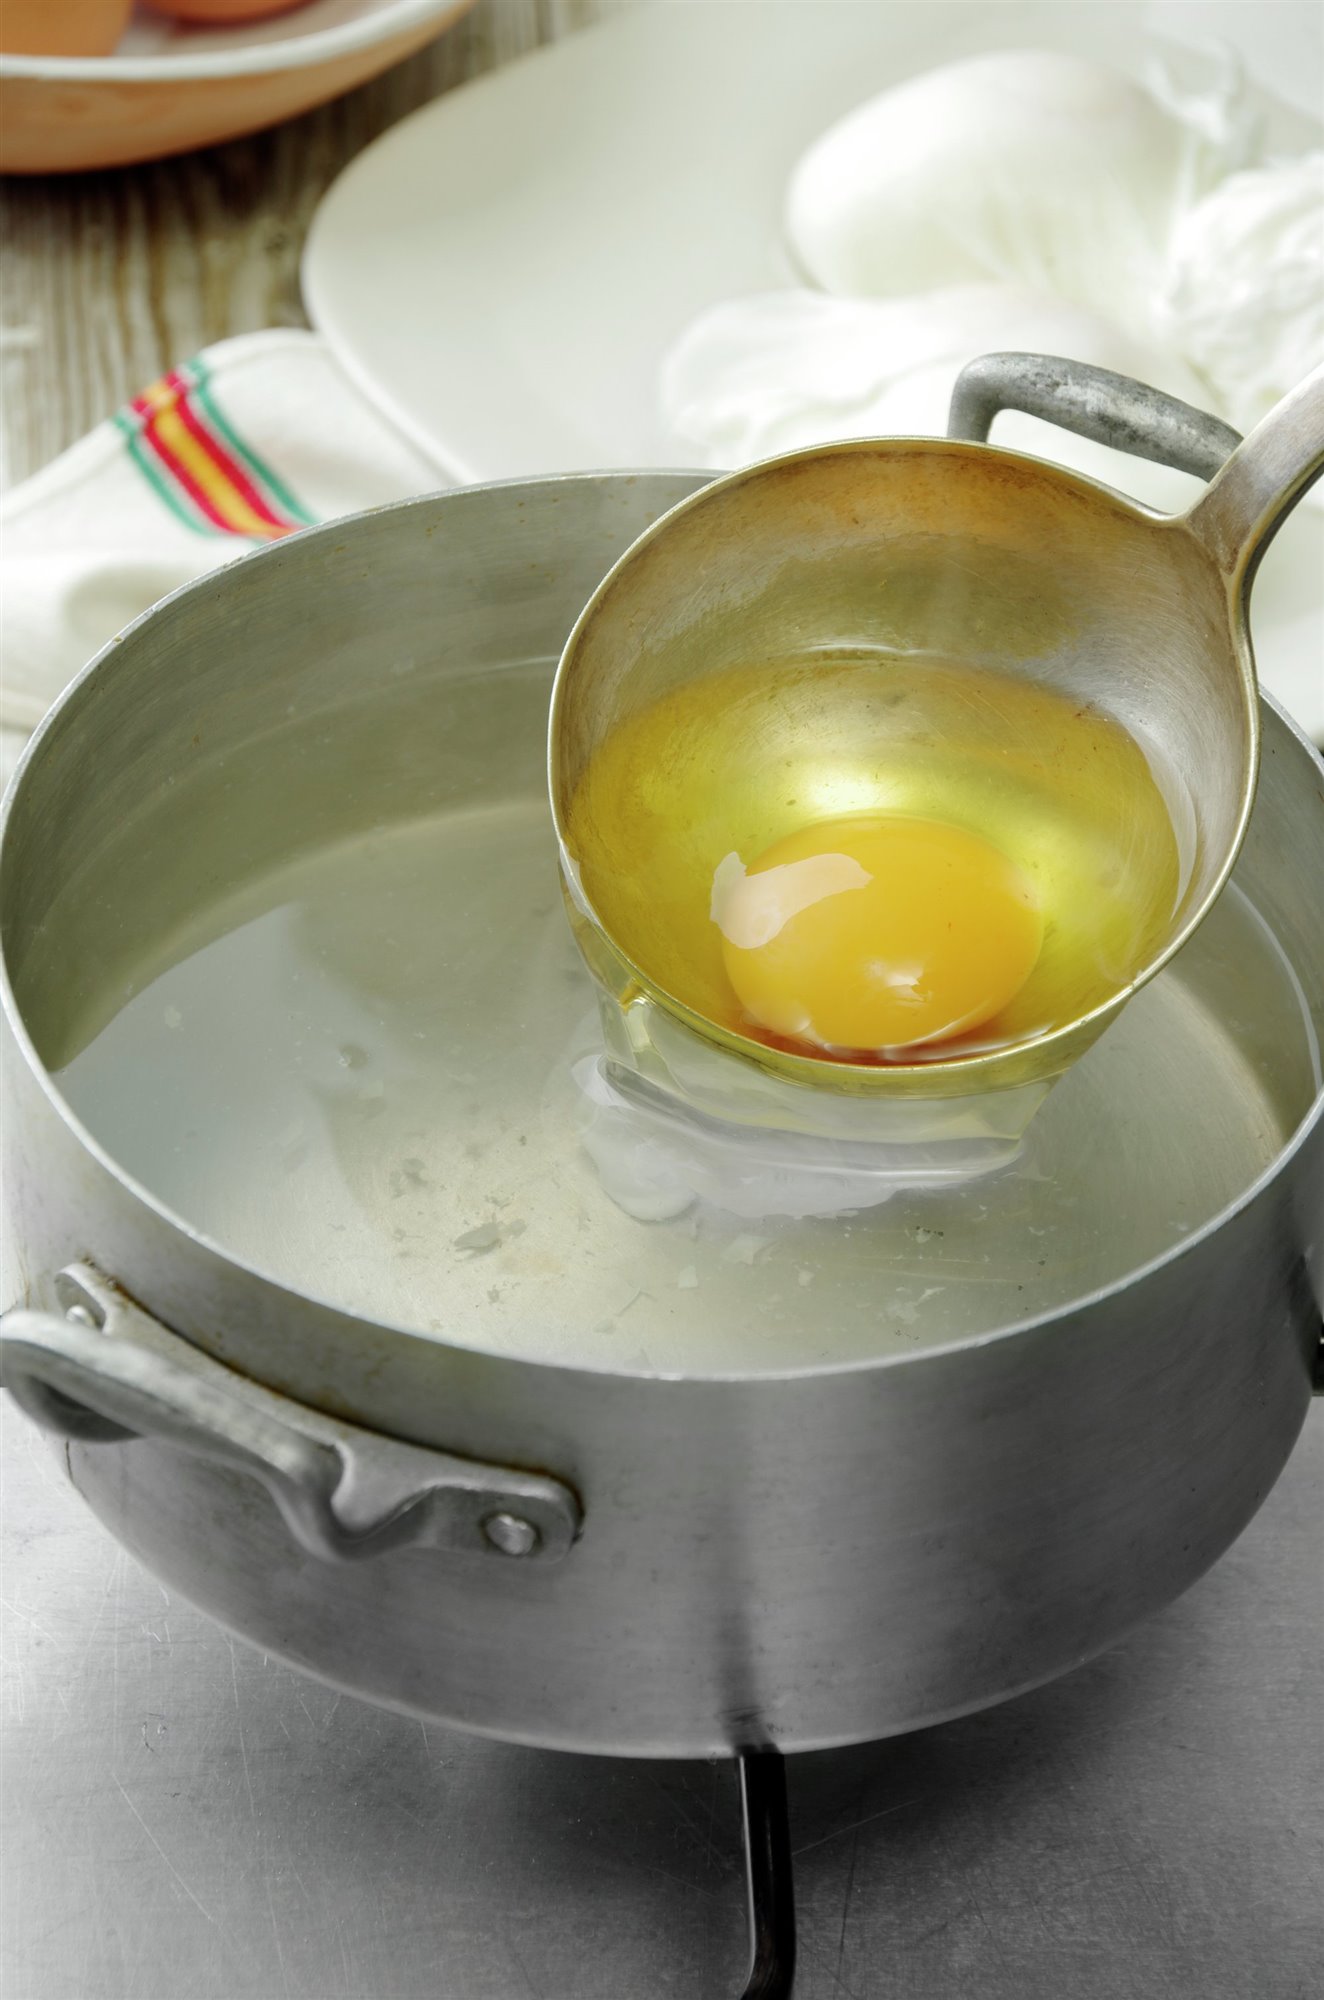 4. Escalfa los huevos